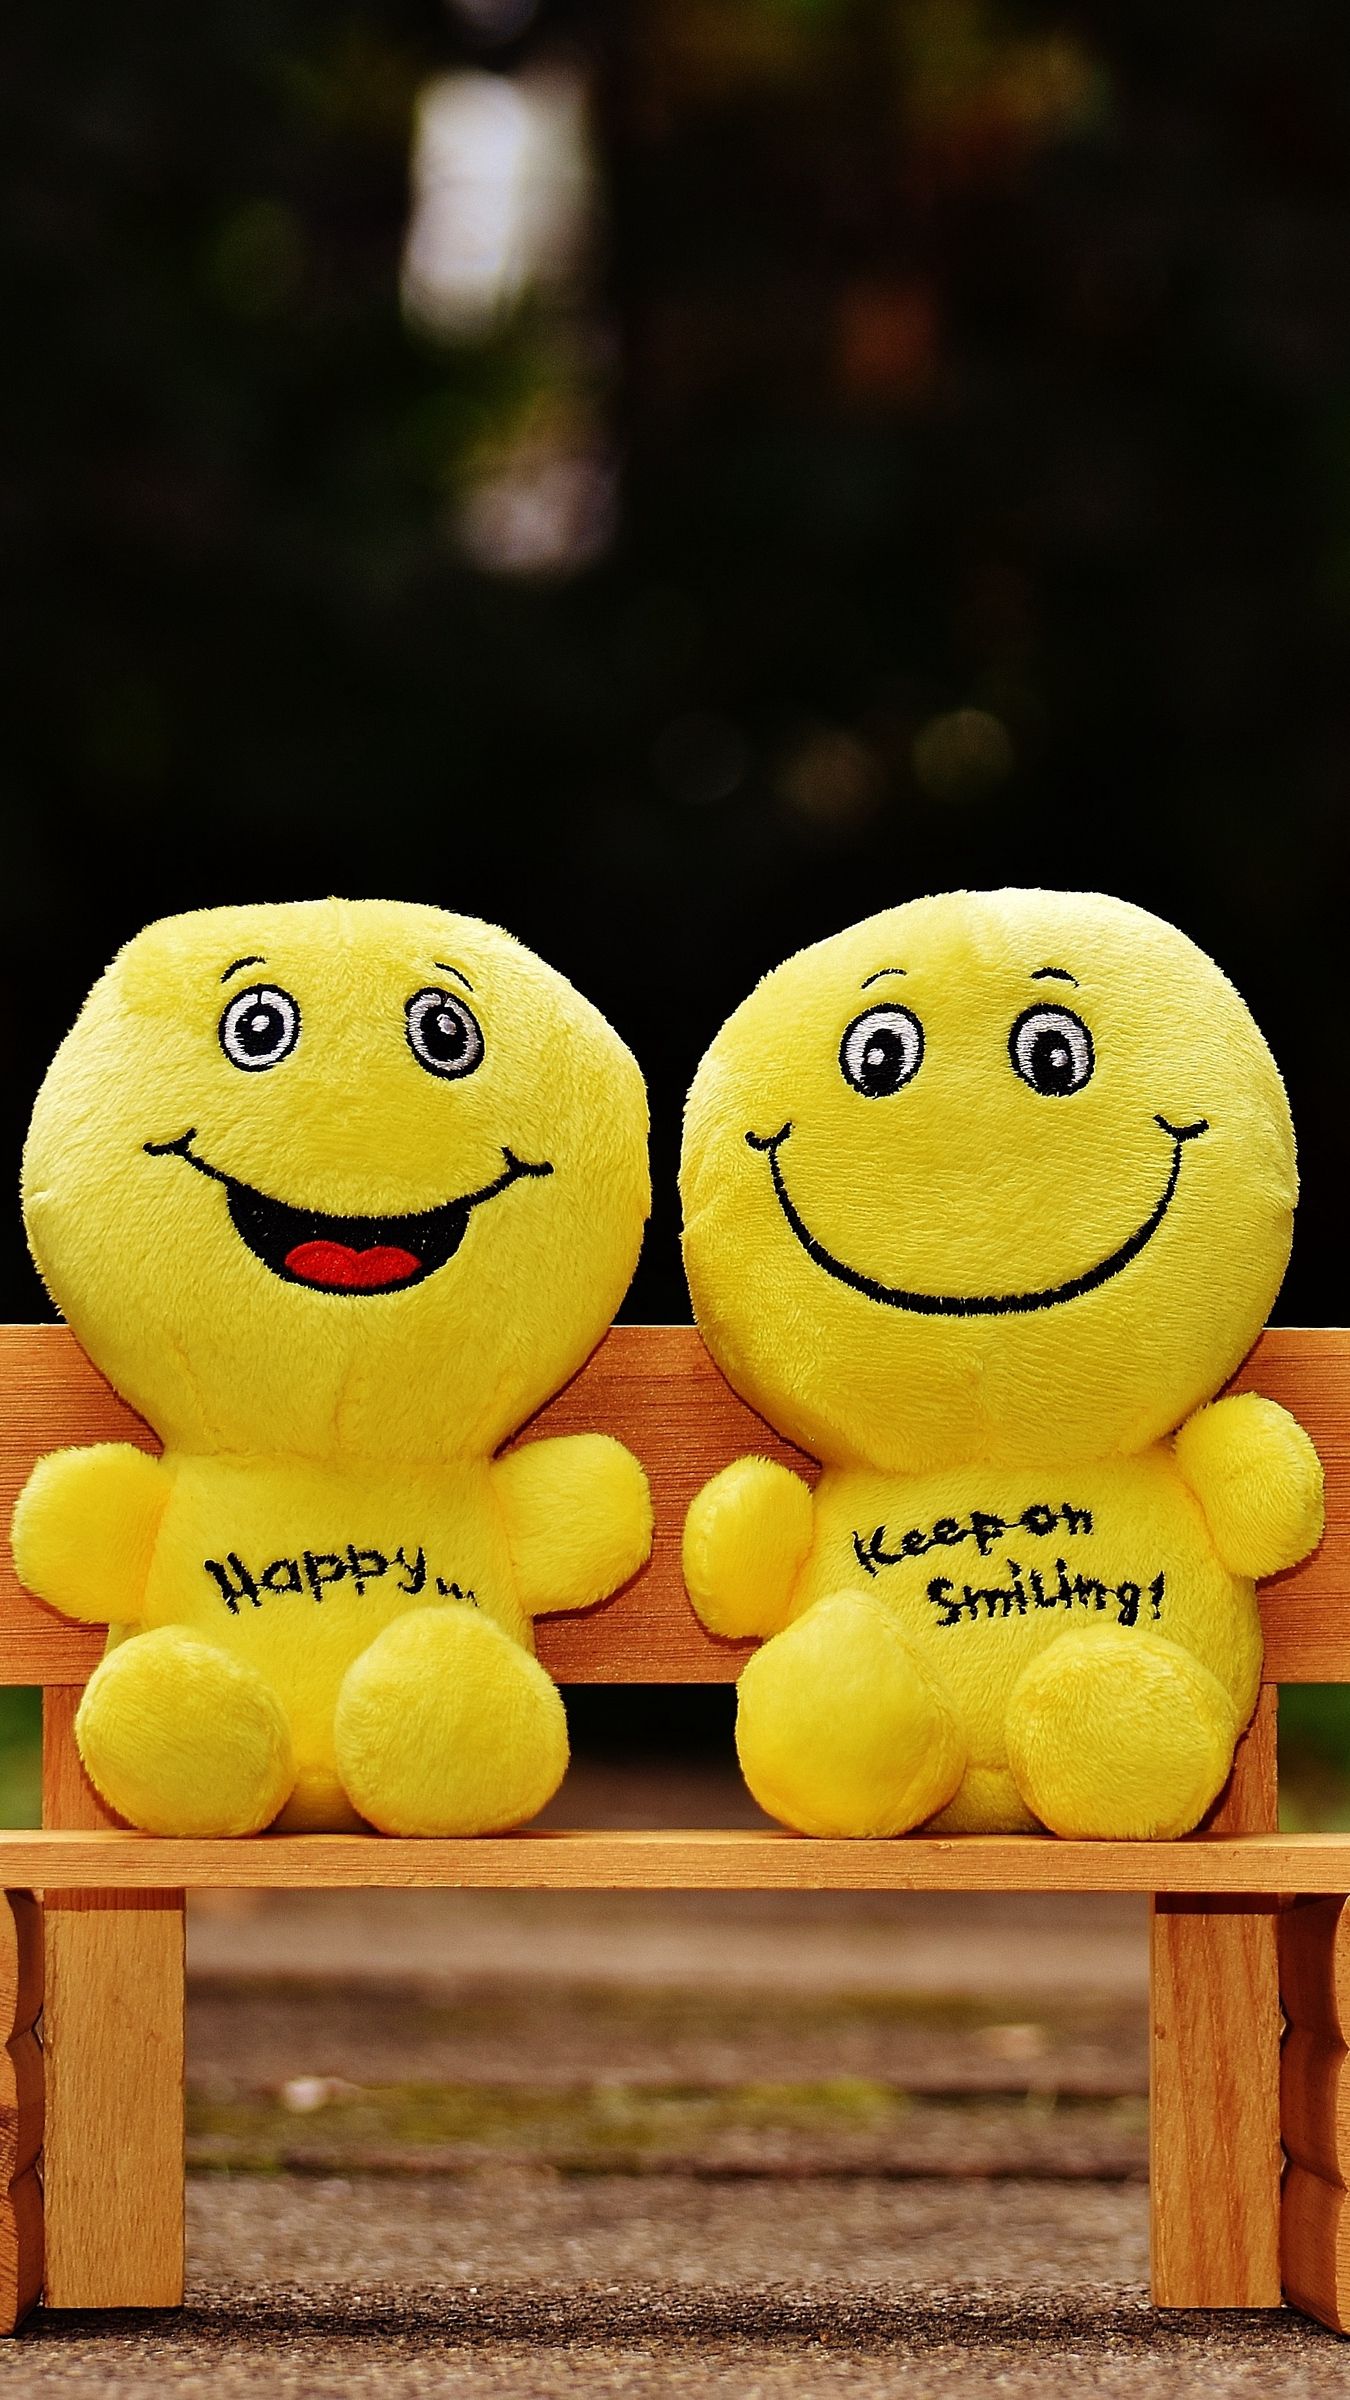 smiley balls wallpaper,smiley,emoticon,smile,facial expression,yellow